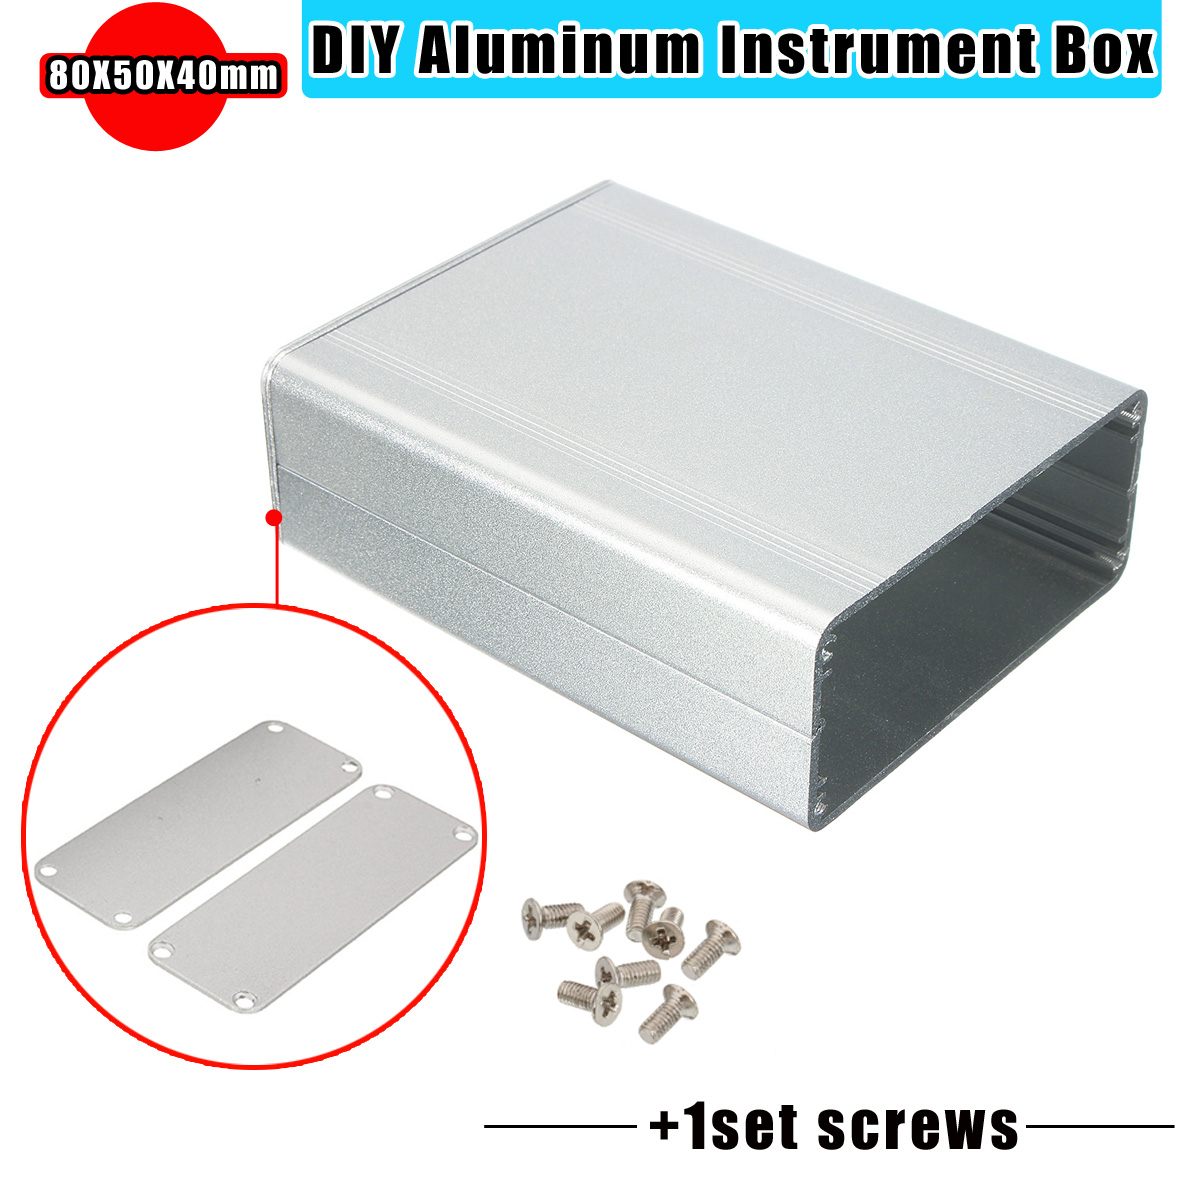 Draagbare Aluminium Splitted Diy Geëxtrudeerd Elektronische Box Project Elektronische Diy Enclousure Case Diy Gereedschap Verpakking Box